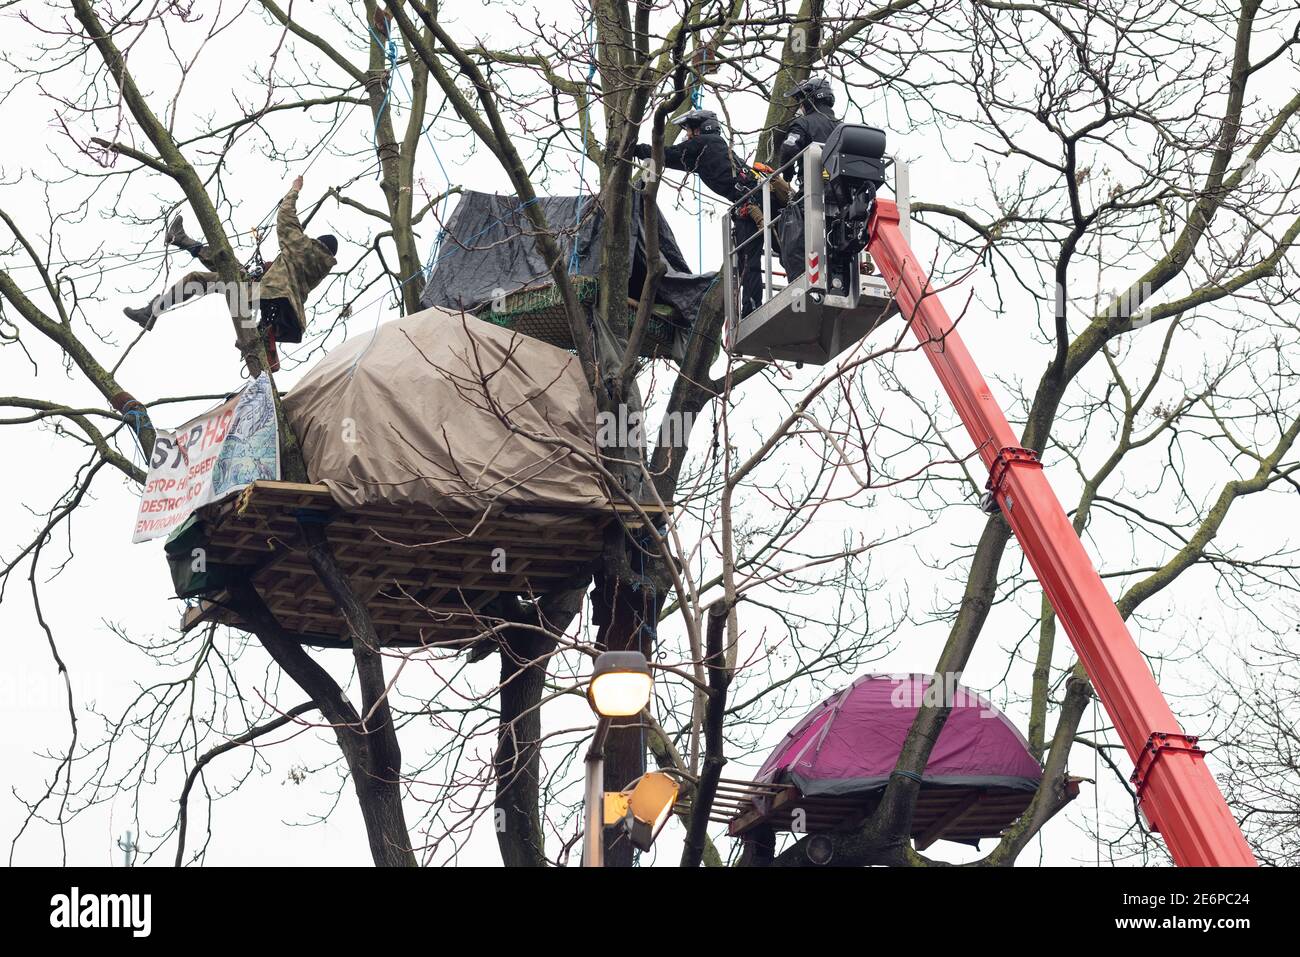 Desalojo de manifestantes de Stop HS2 del campamento en Euston Square Gardens, Londres, 27 de enero de 2021. Un recolector de cerezas llega a las tiendas de los manifestantes en el árbol. Foto de stock